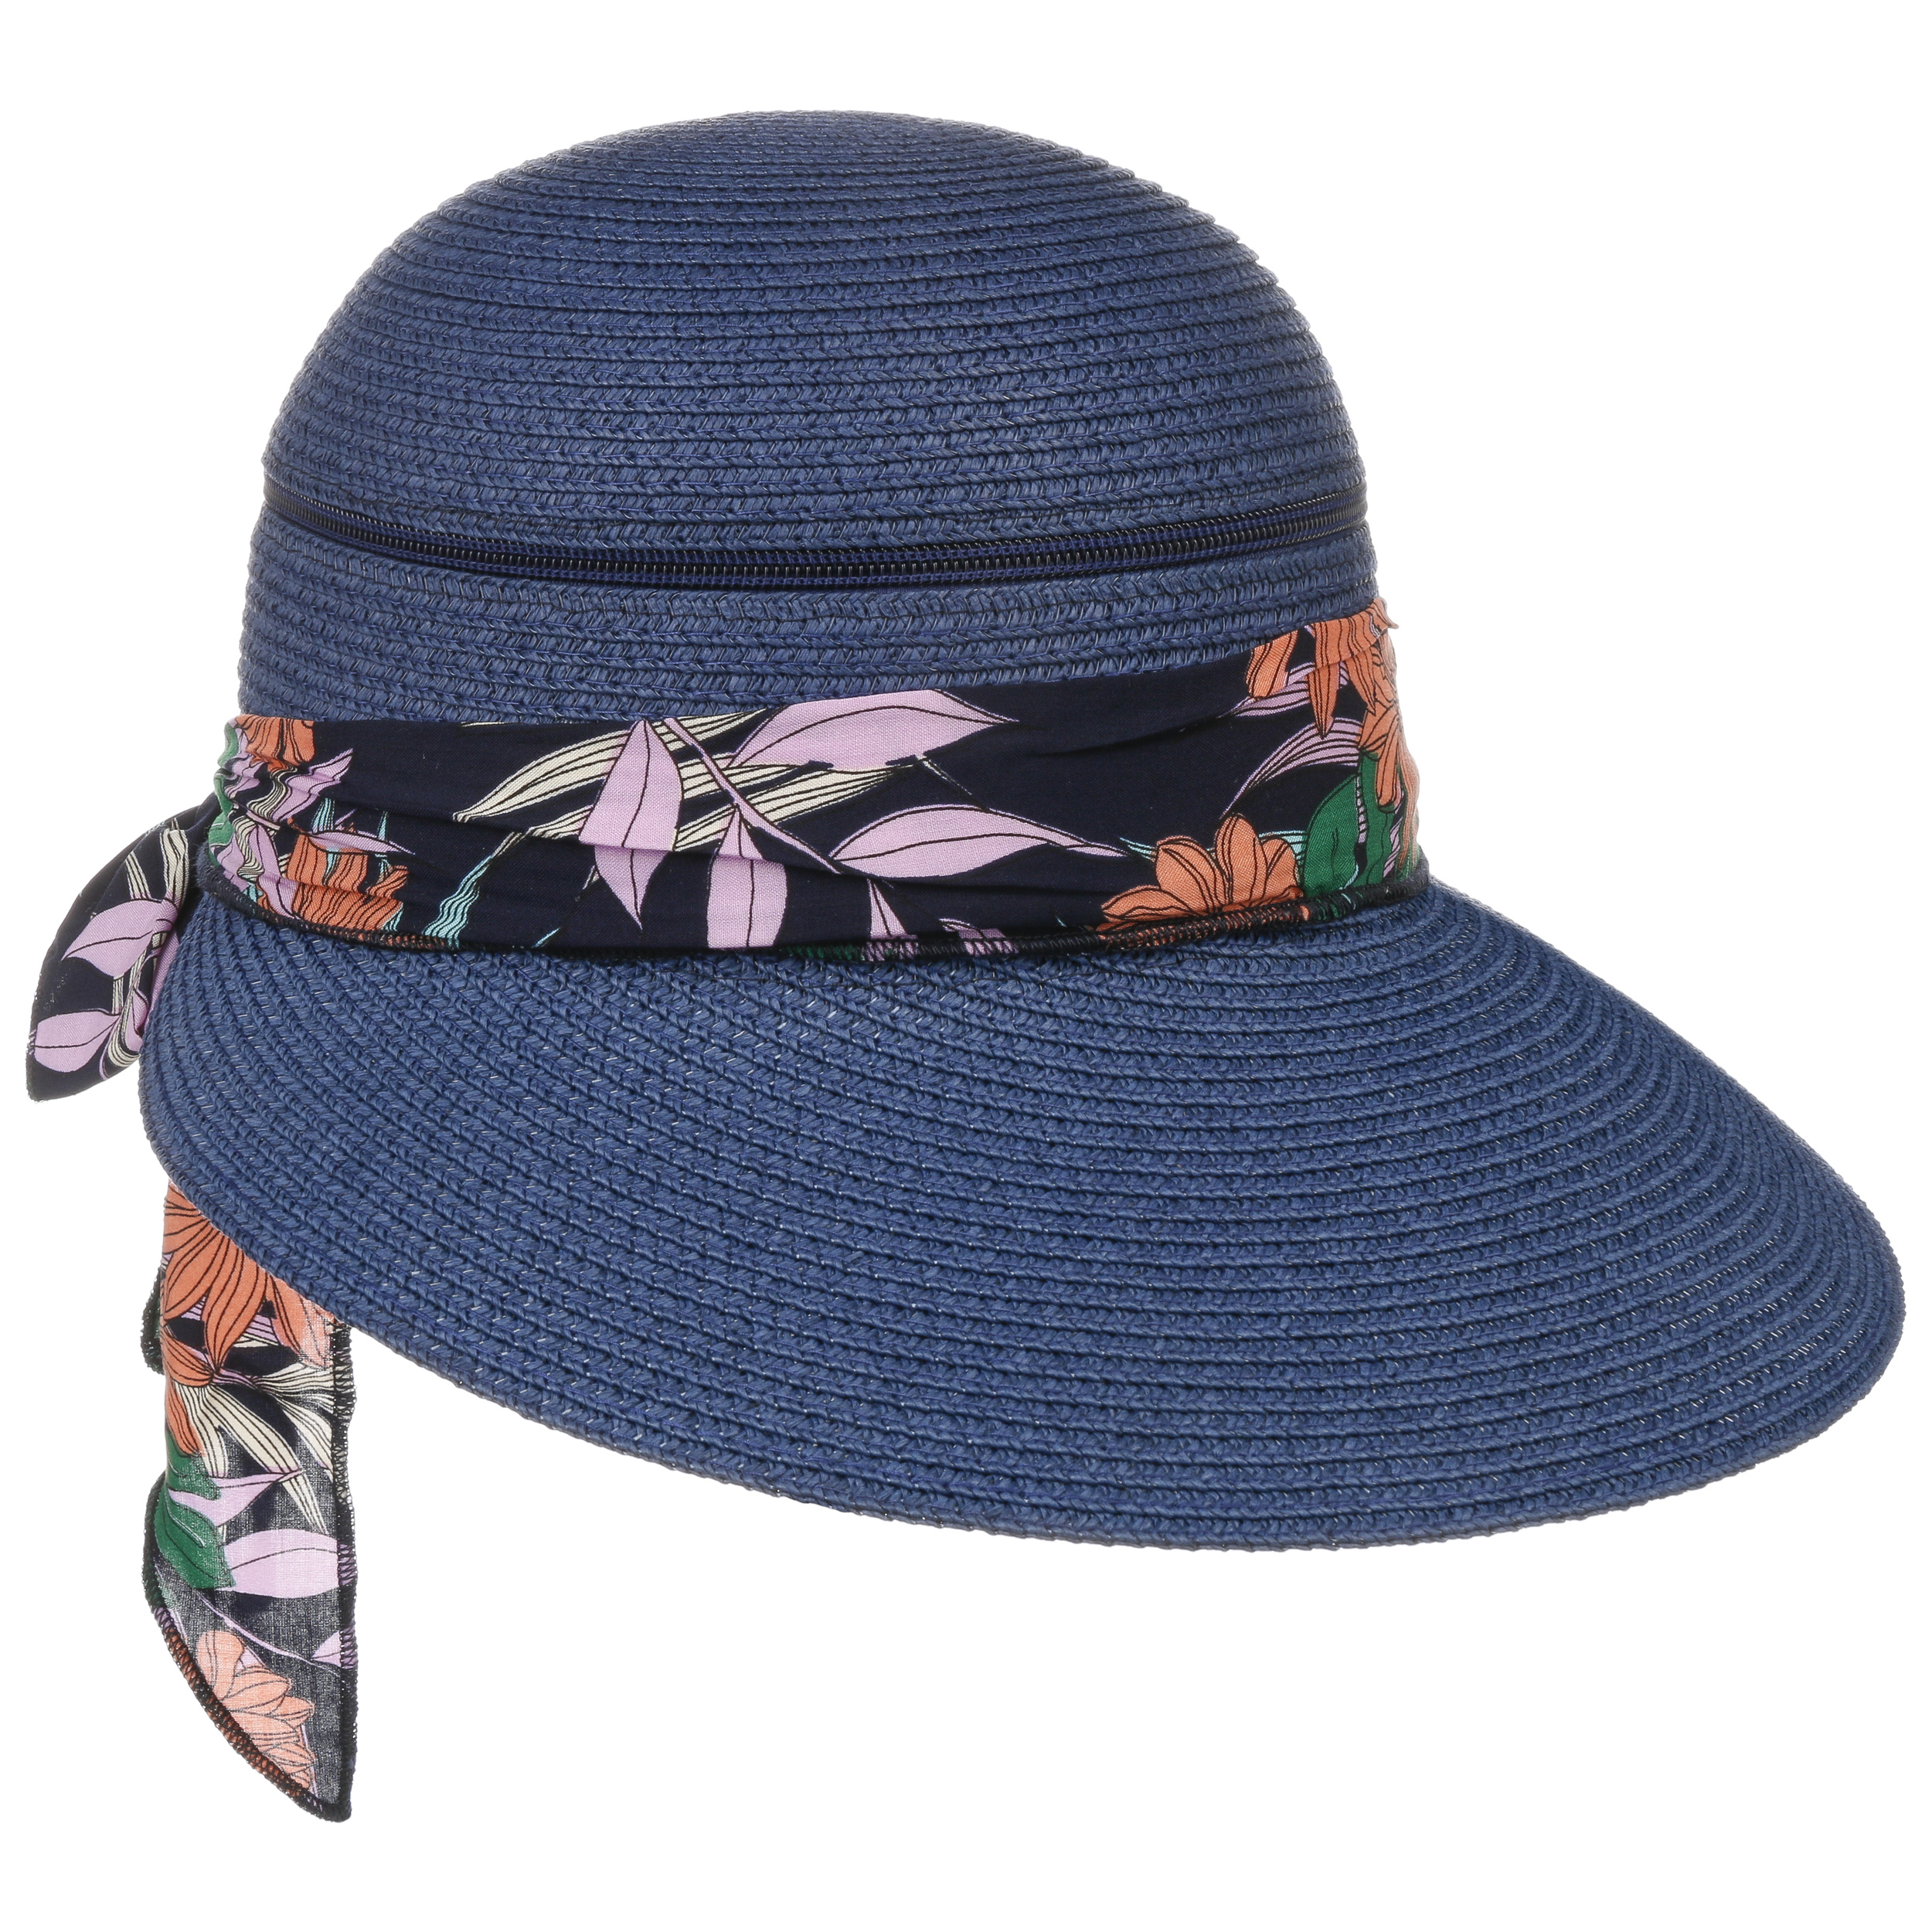 Accessori Cappelli e berretti Cappelli da sole e visiere Cappelli da sole Cappello di paglia con decorazioni 